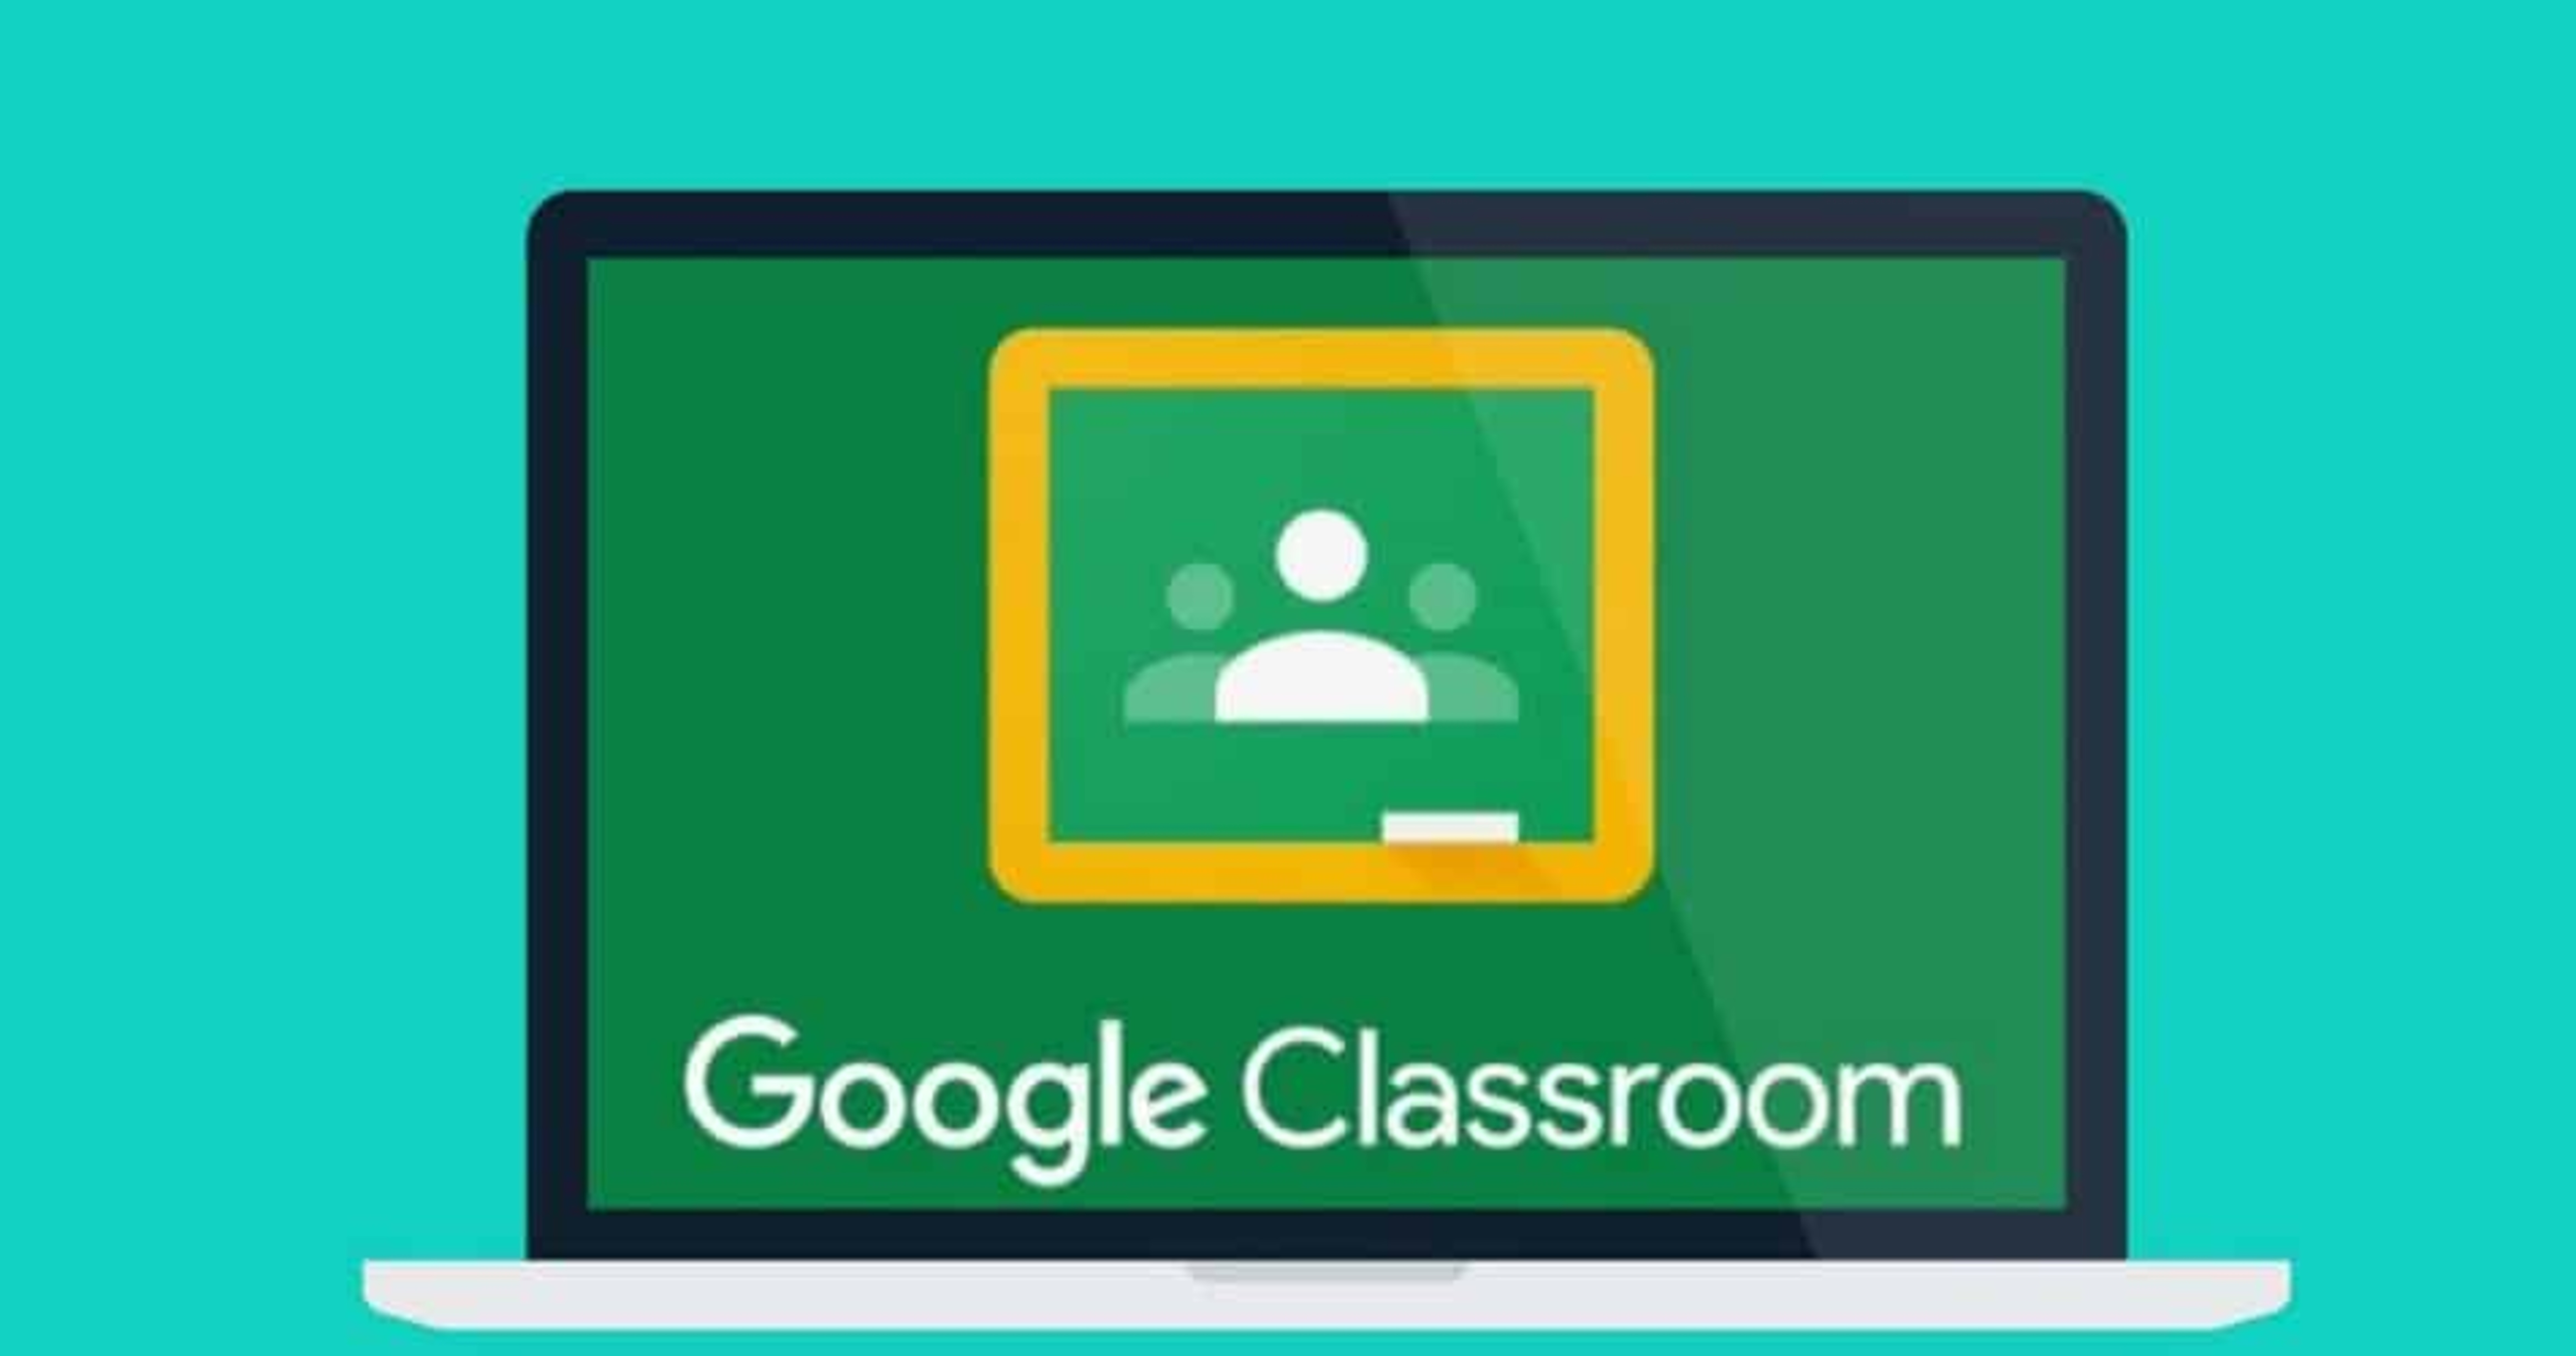 Google Classroom e a prática docente - Iniciação (ACD AE Cister)